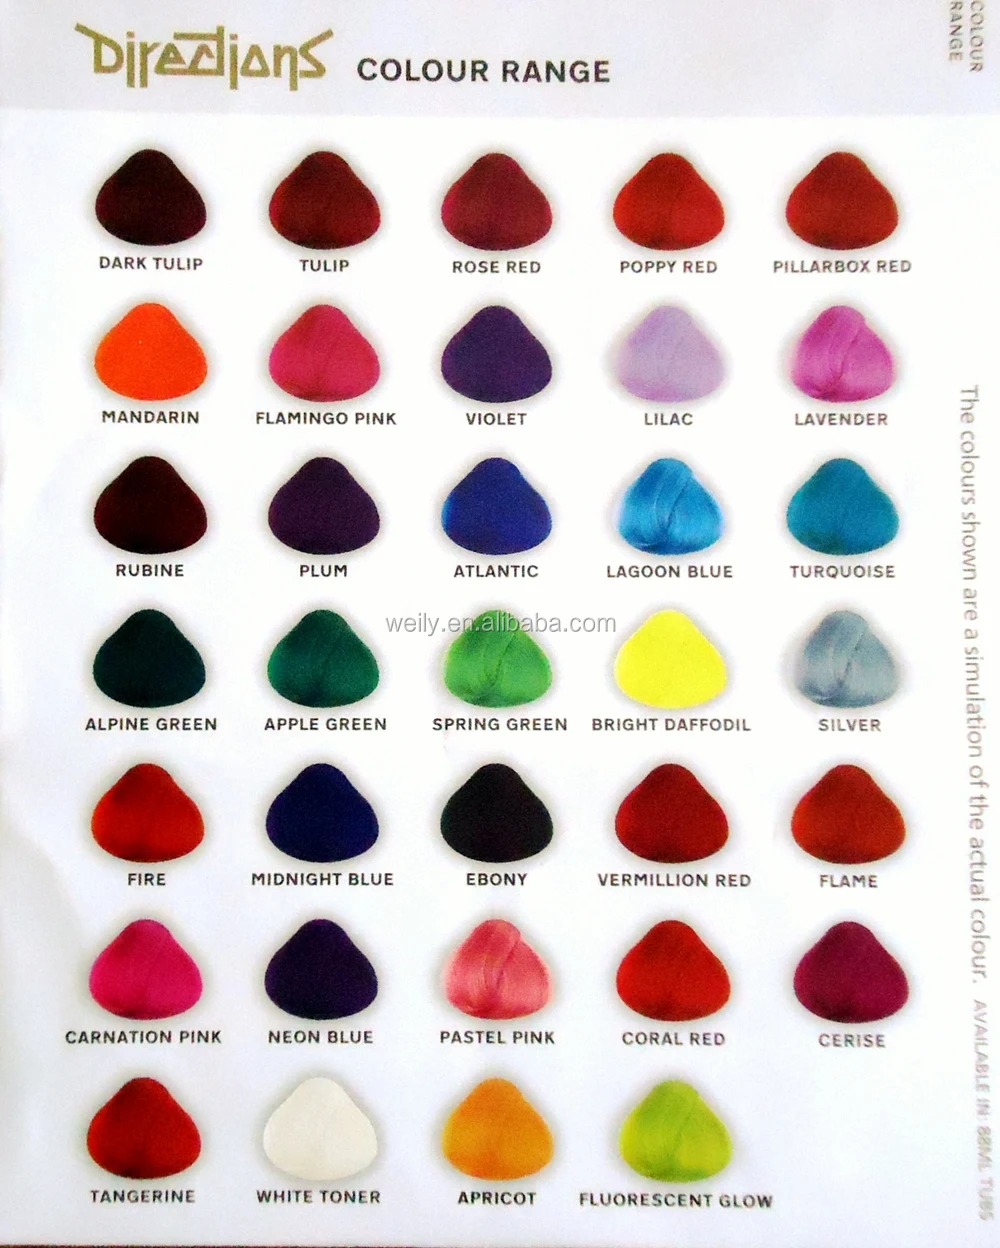 Wild Colour Hair Colour Chart